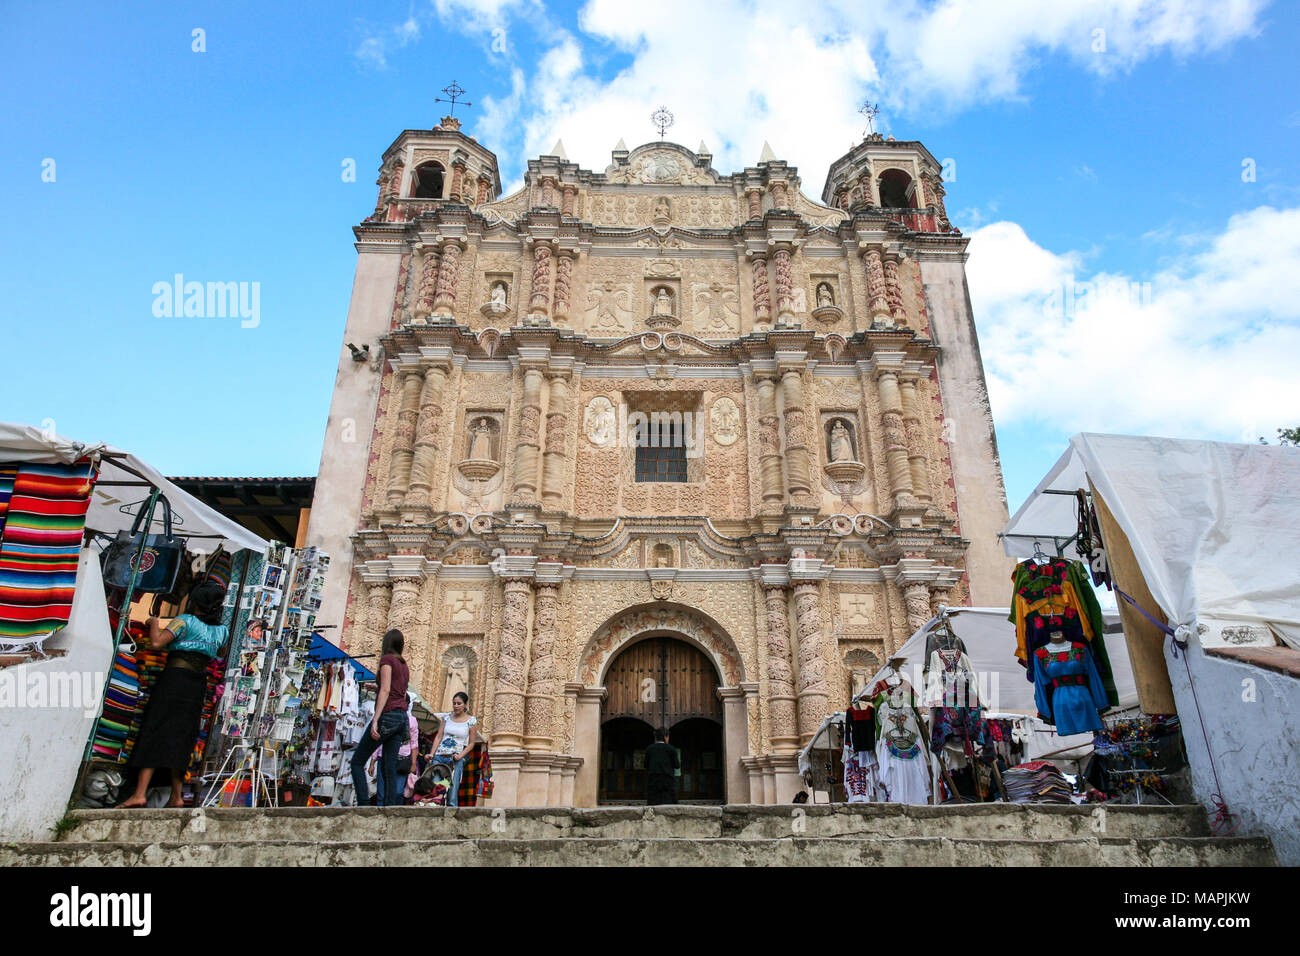 SAN CRISTOBAL, MEXICO - March 8, 2012: Santo Domingo Church baroque facade and gift market  in San Cristobal De las Casas, Mexico. Stock Photo